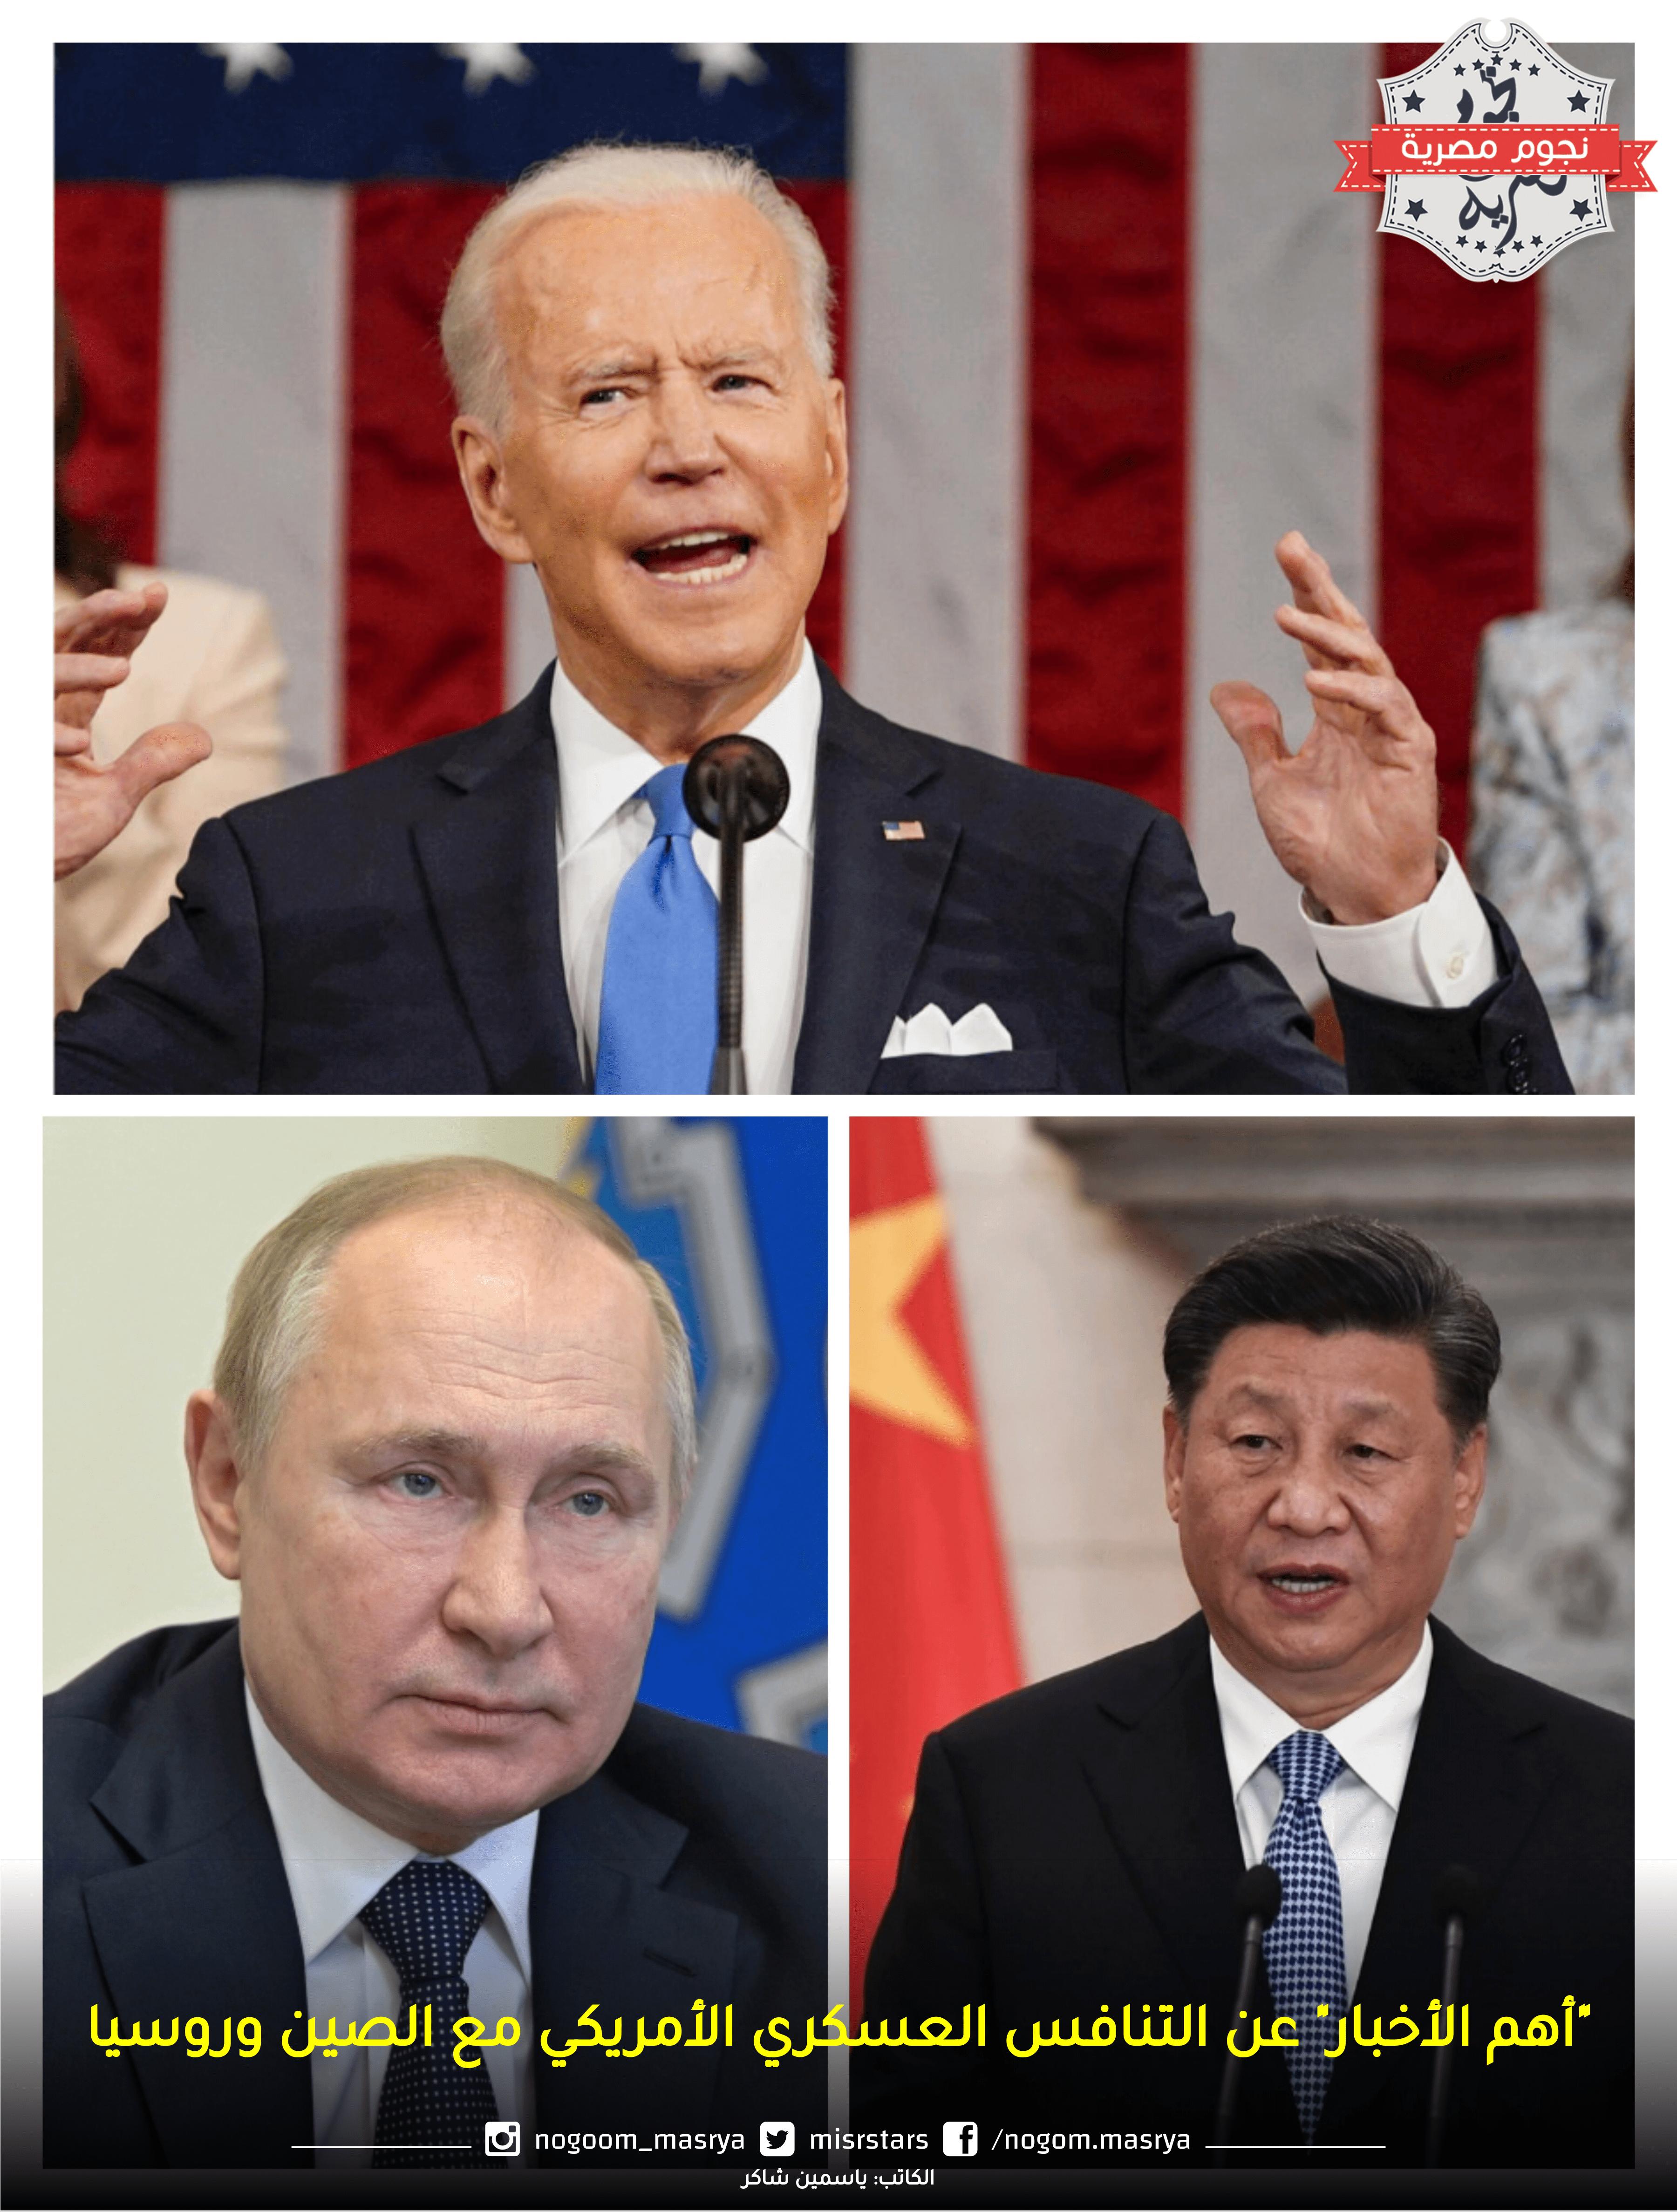 “أهم الأخبار” عن التنافس العسكري الأمريكي مع الصين وروسيا